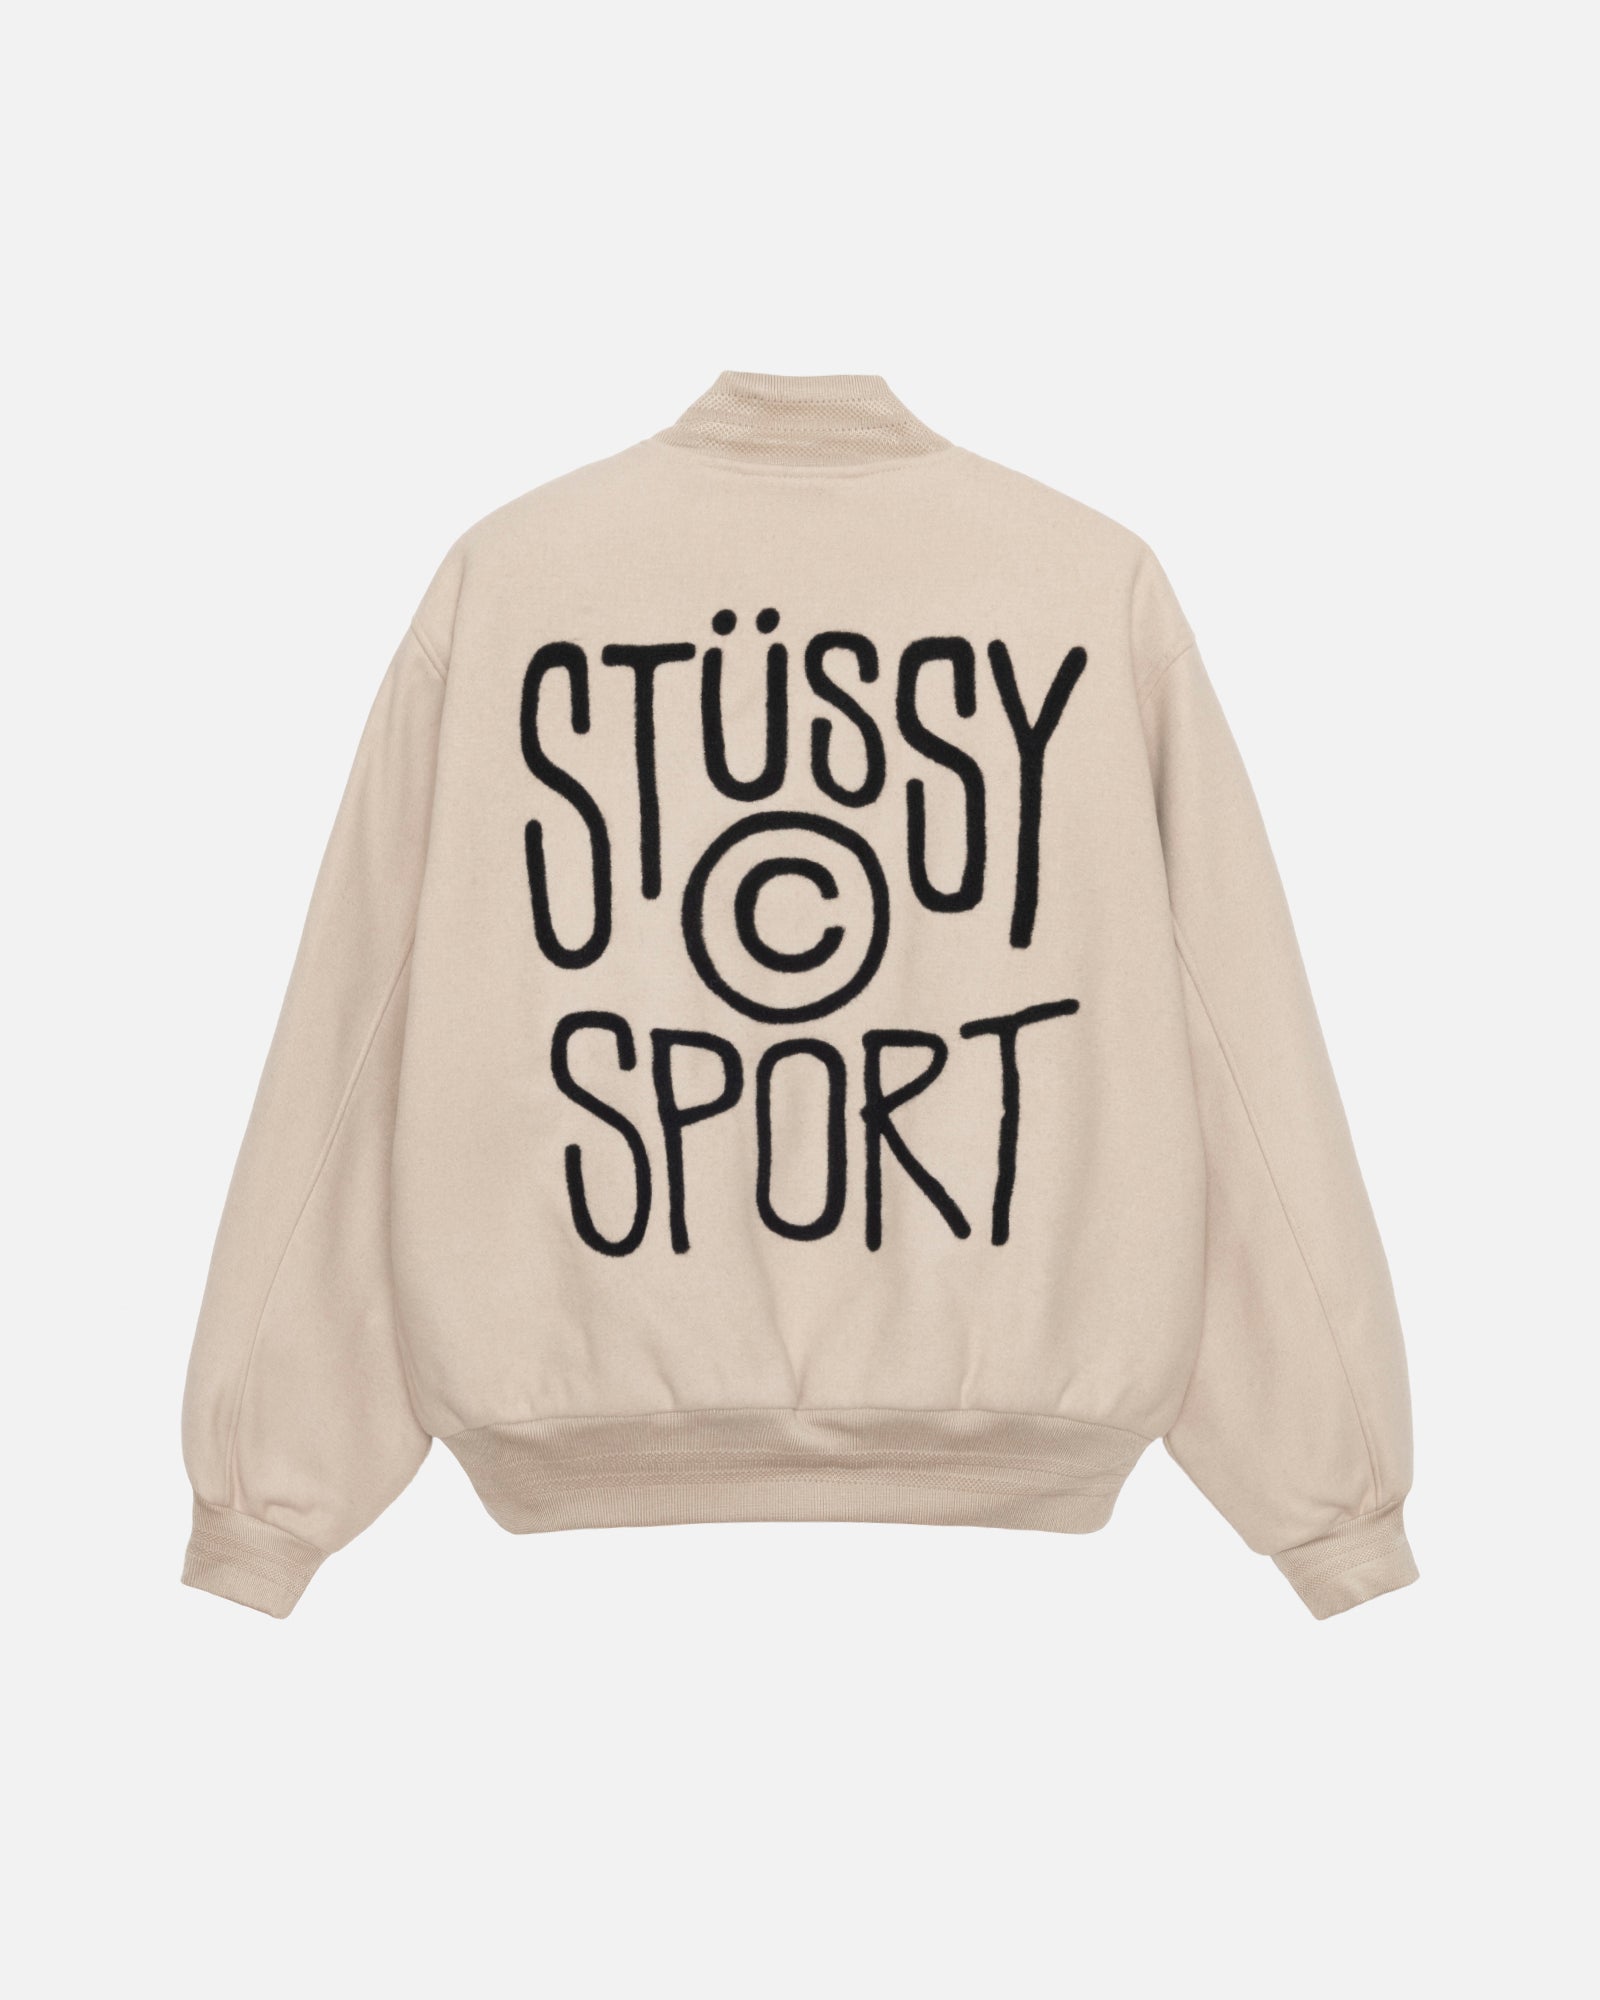 Shop all – Stüssy UK